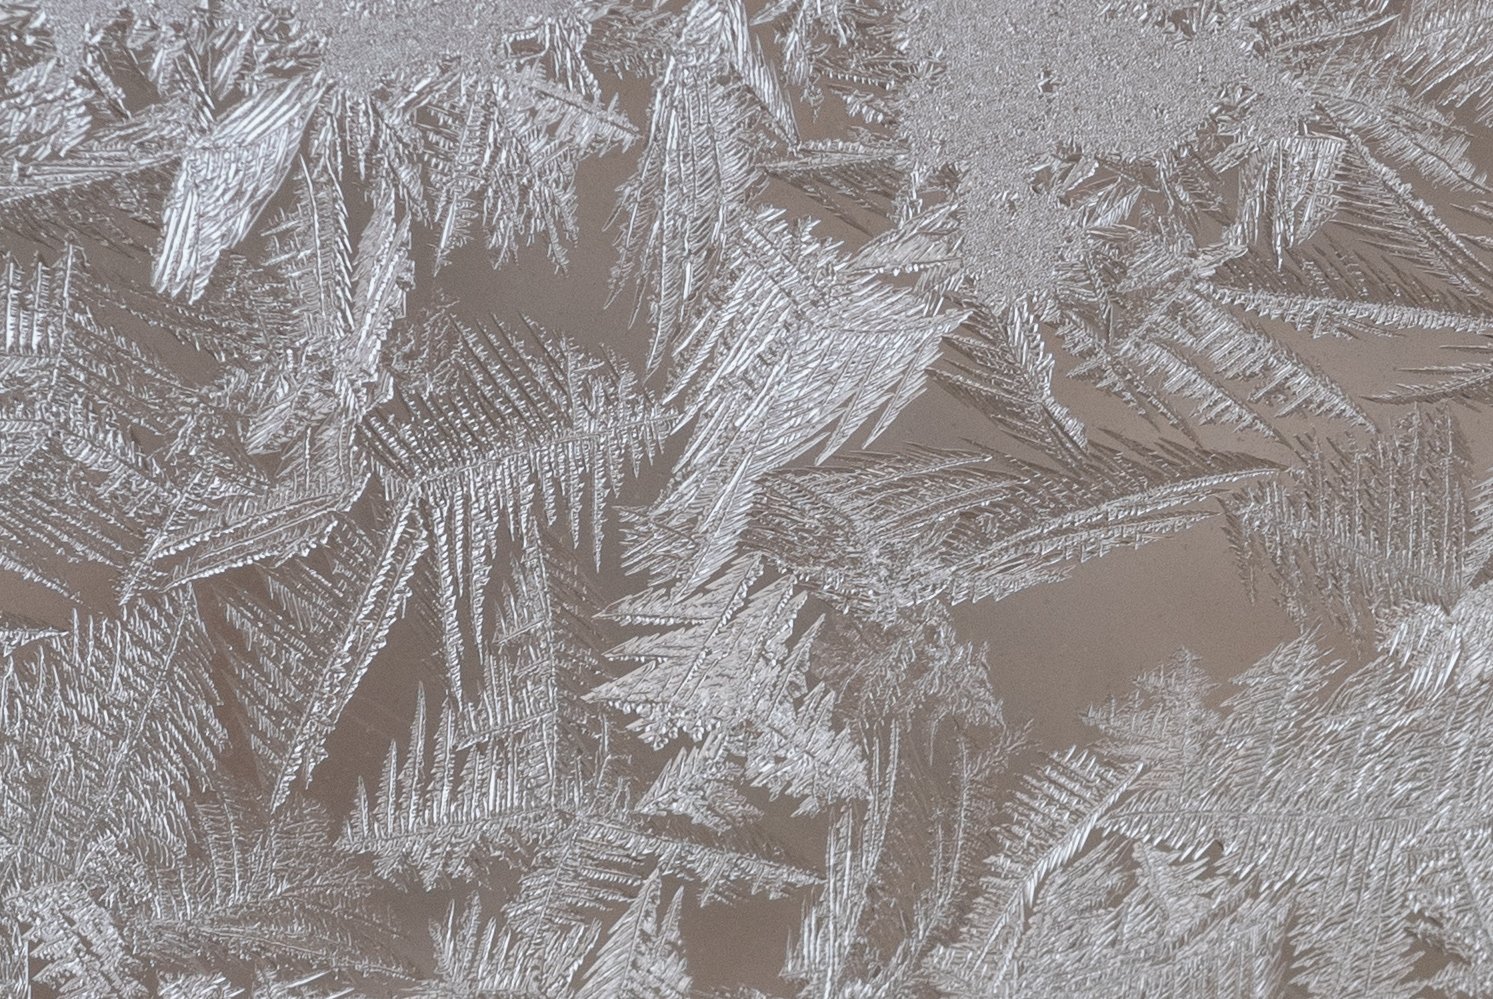 Мороз рисует красивые серебряные узоры на моём окне